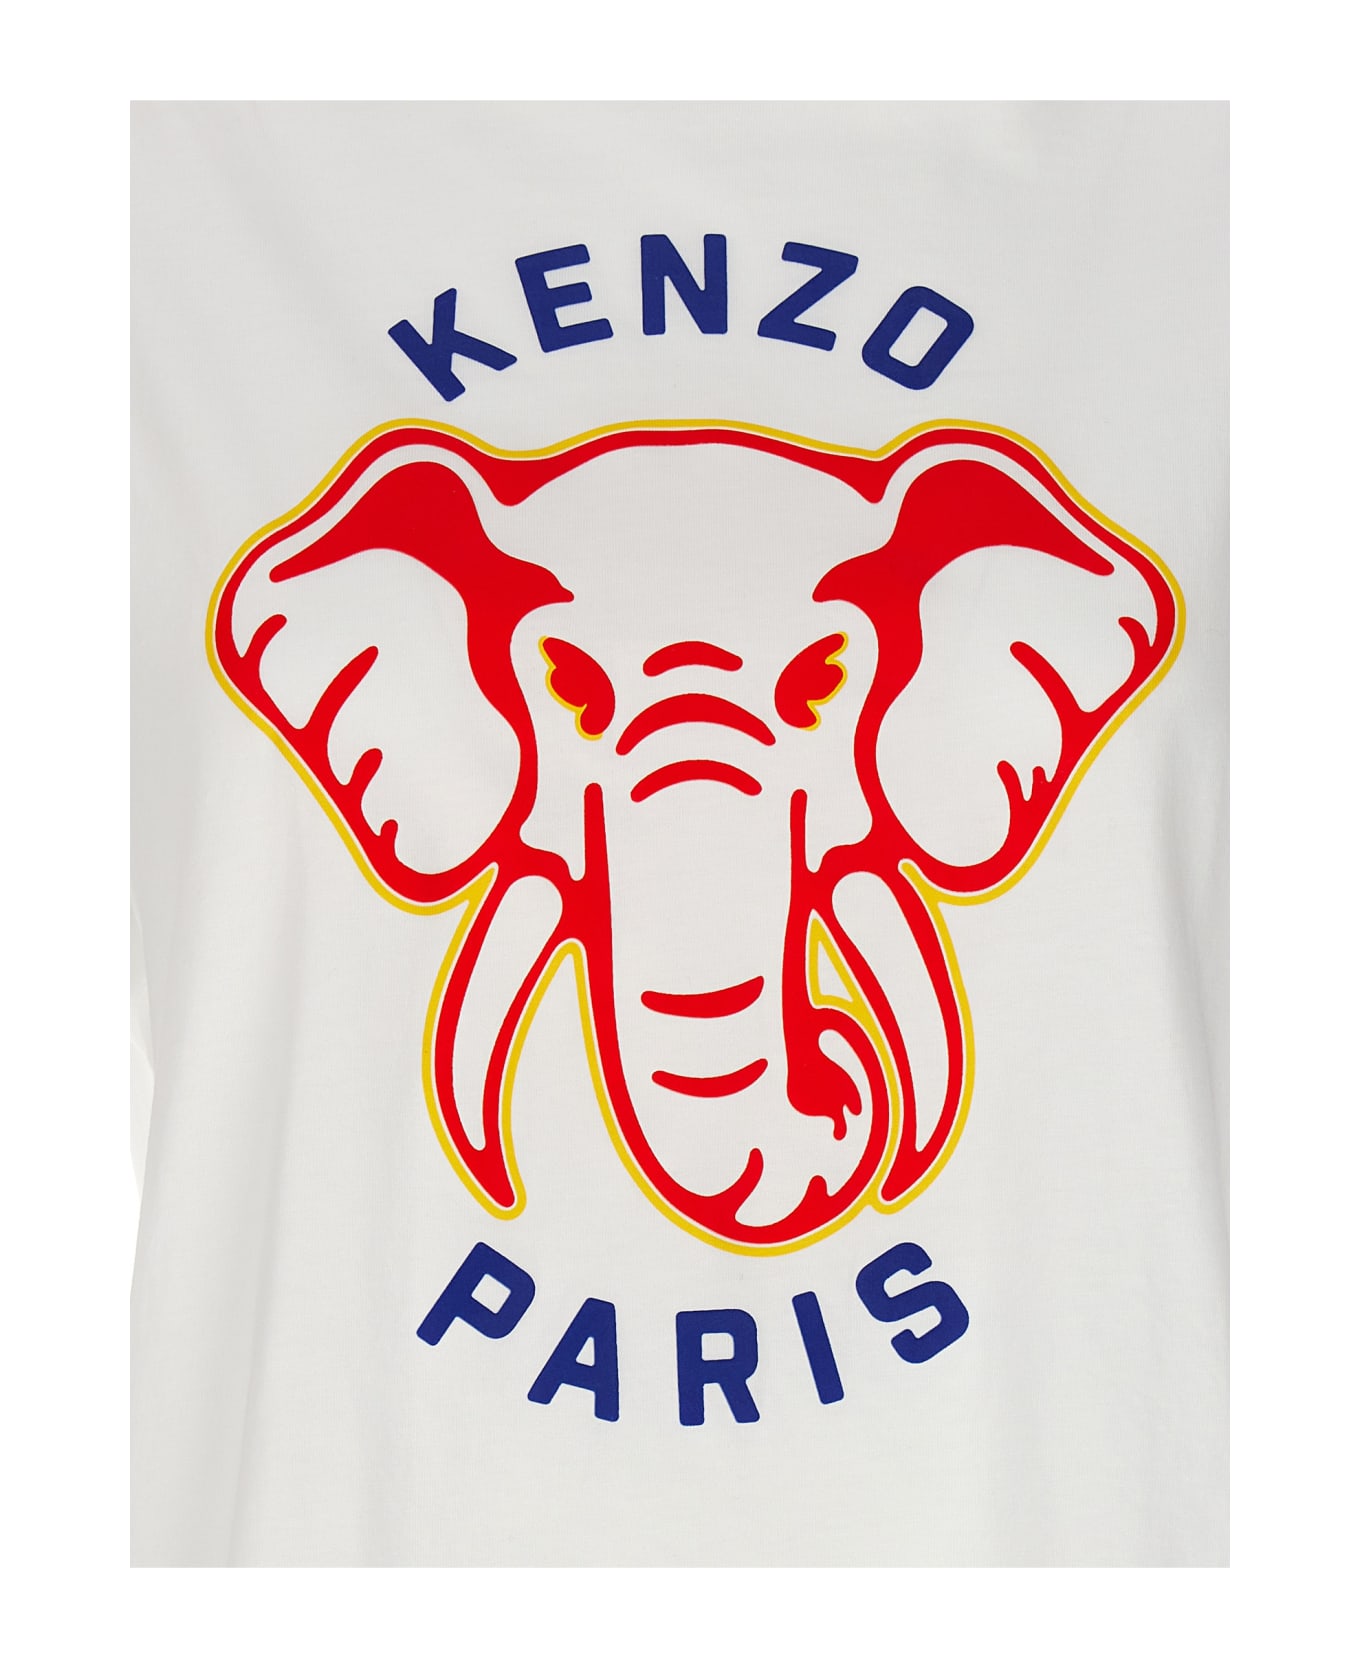 Kenzo 'kenzo Elephant' T-shirt - White Tシャツ